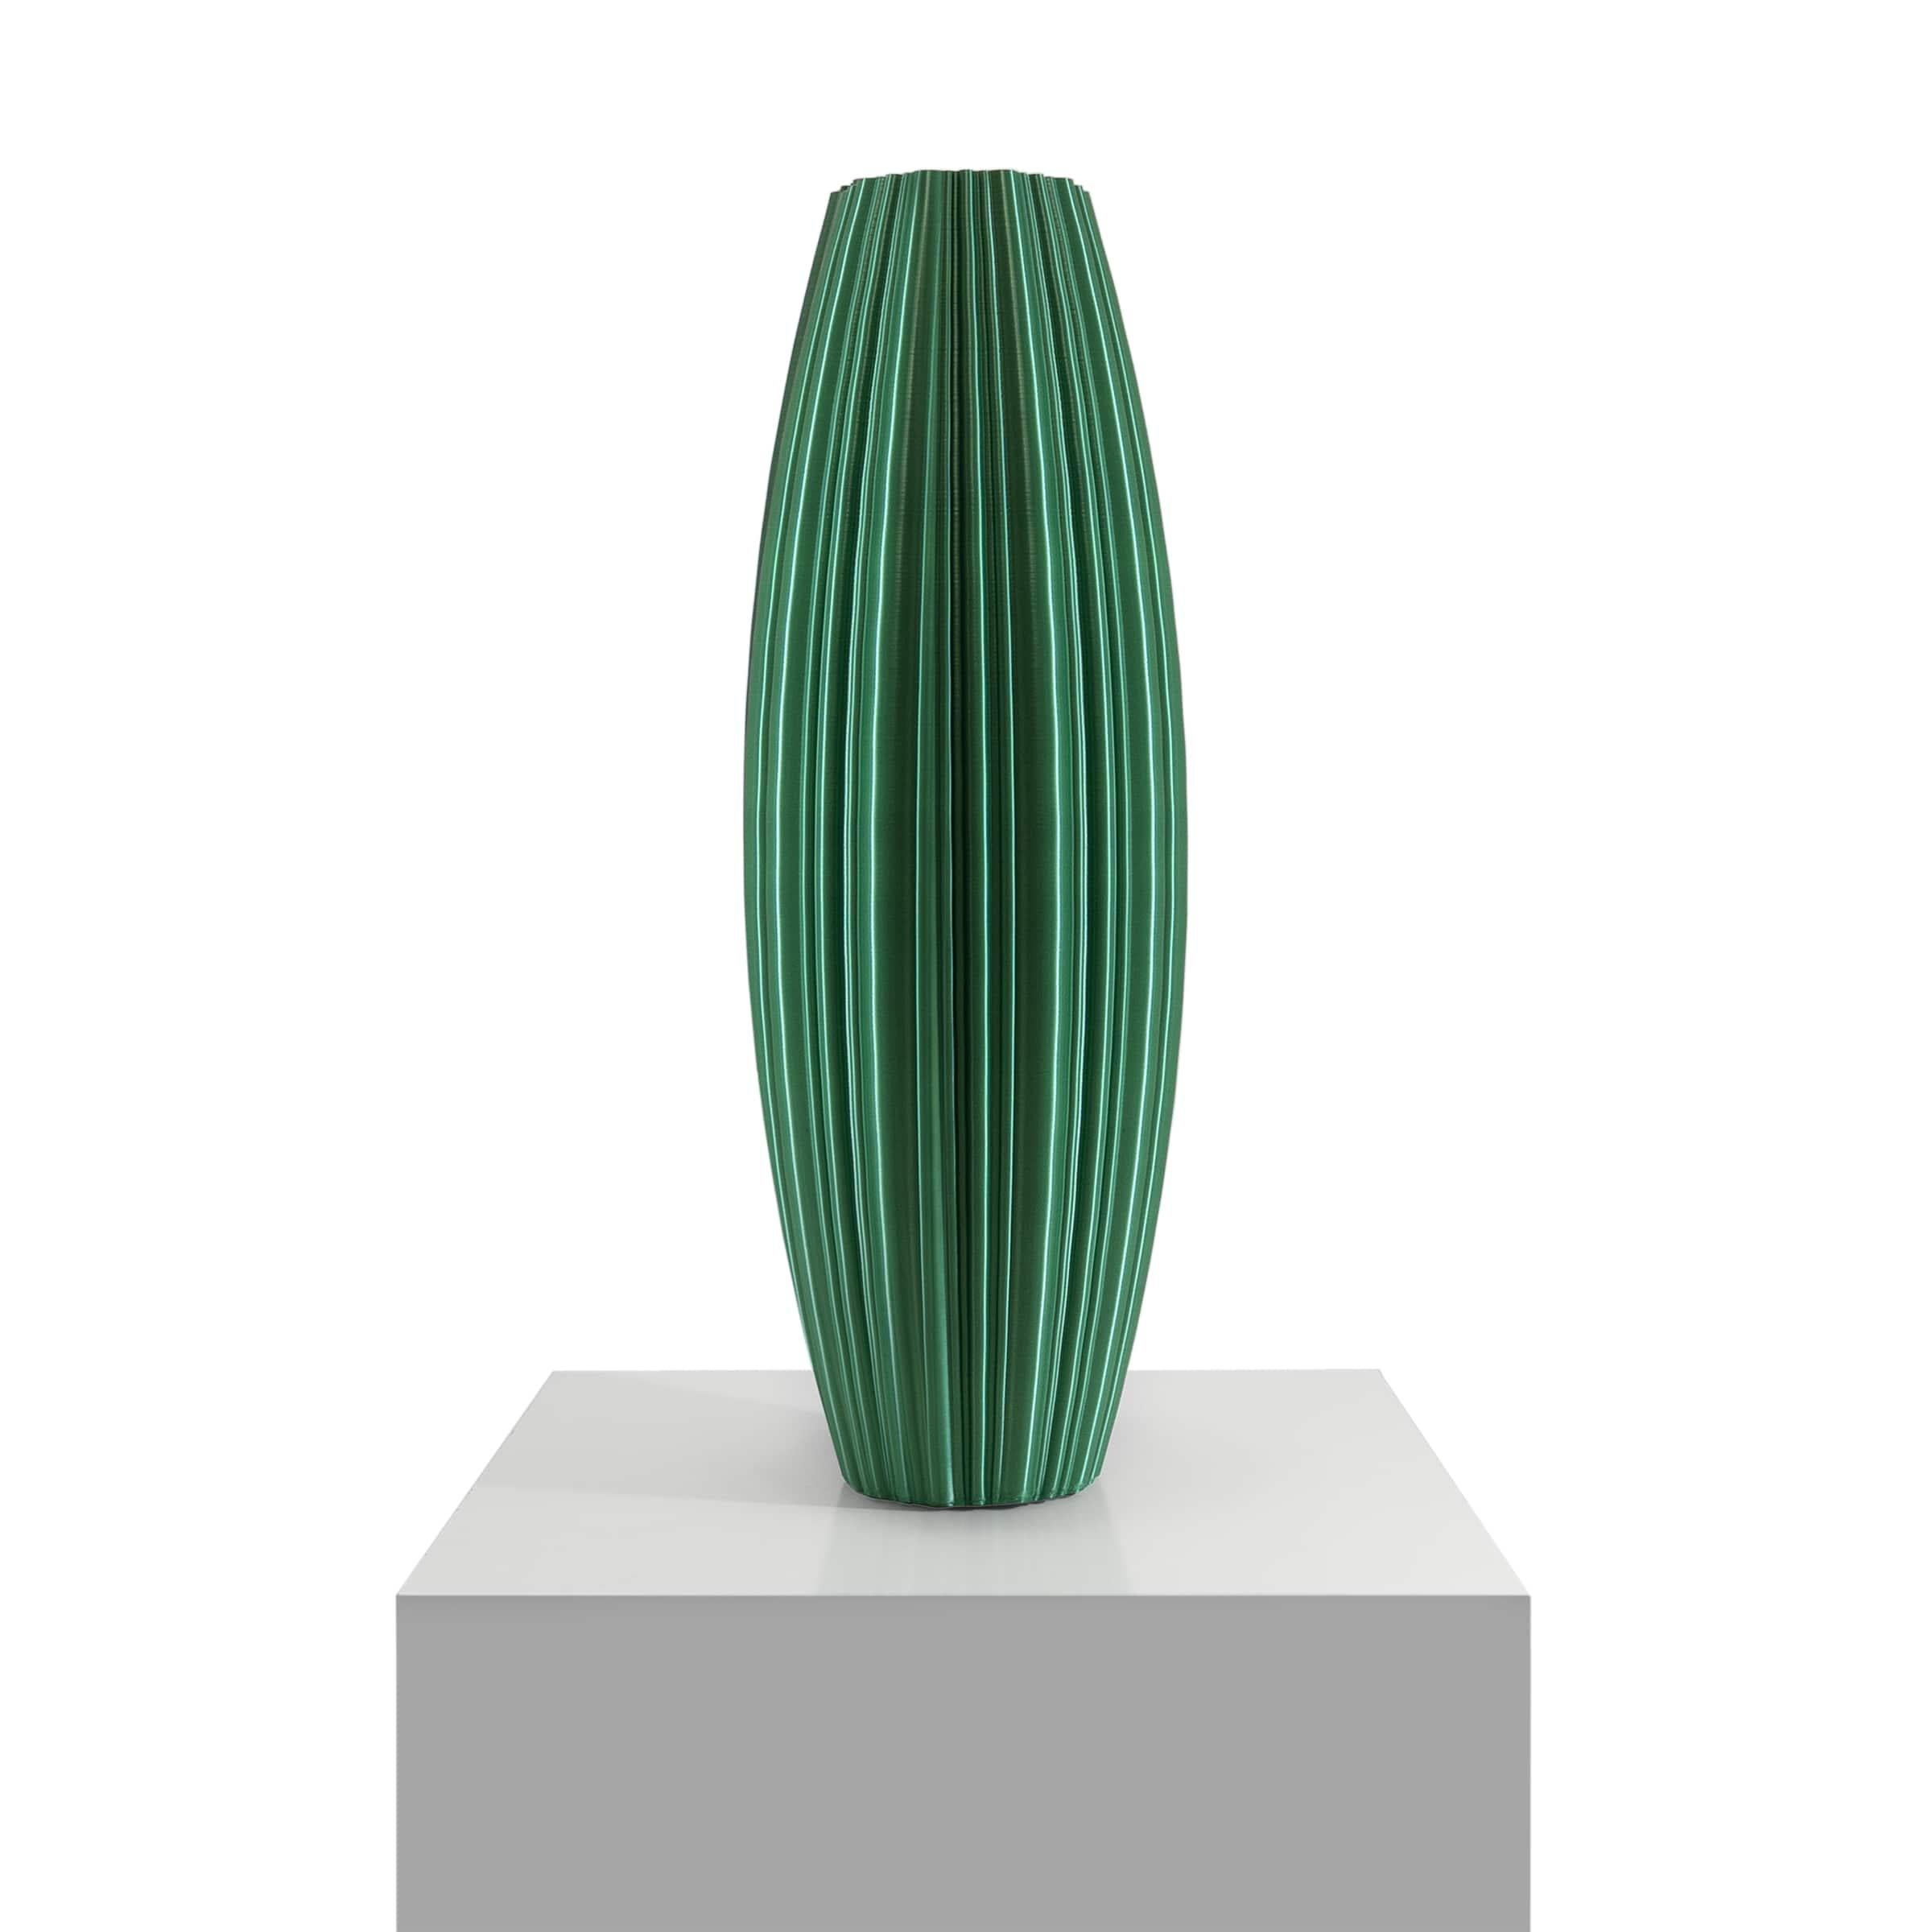 Vase-sculpture de DygoDesign
Faisant partie de la collection Dygo Selection de designs sculpturaux, cette pièce magnifique présente des lignes douces et apaisantes, robustes mais délicates à la fois. Fabriquée en résine selon des méthodes durables